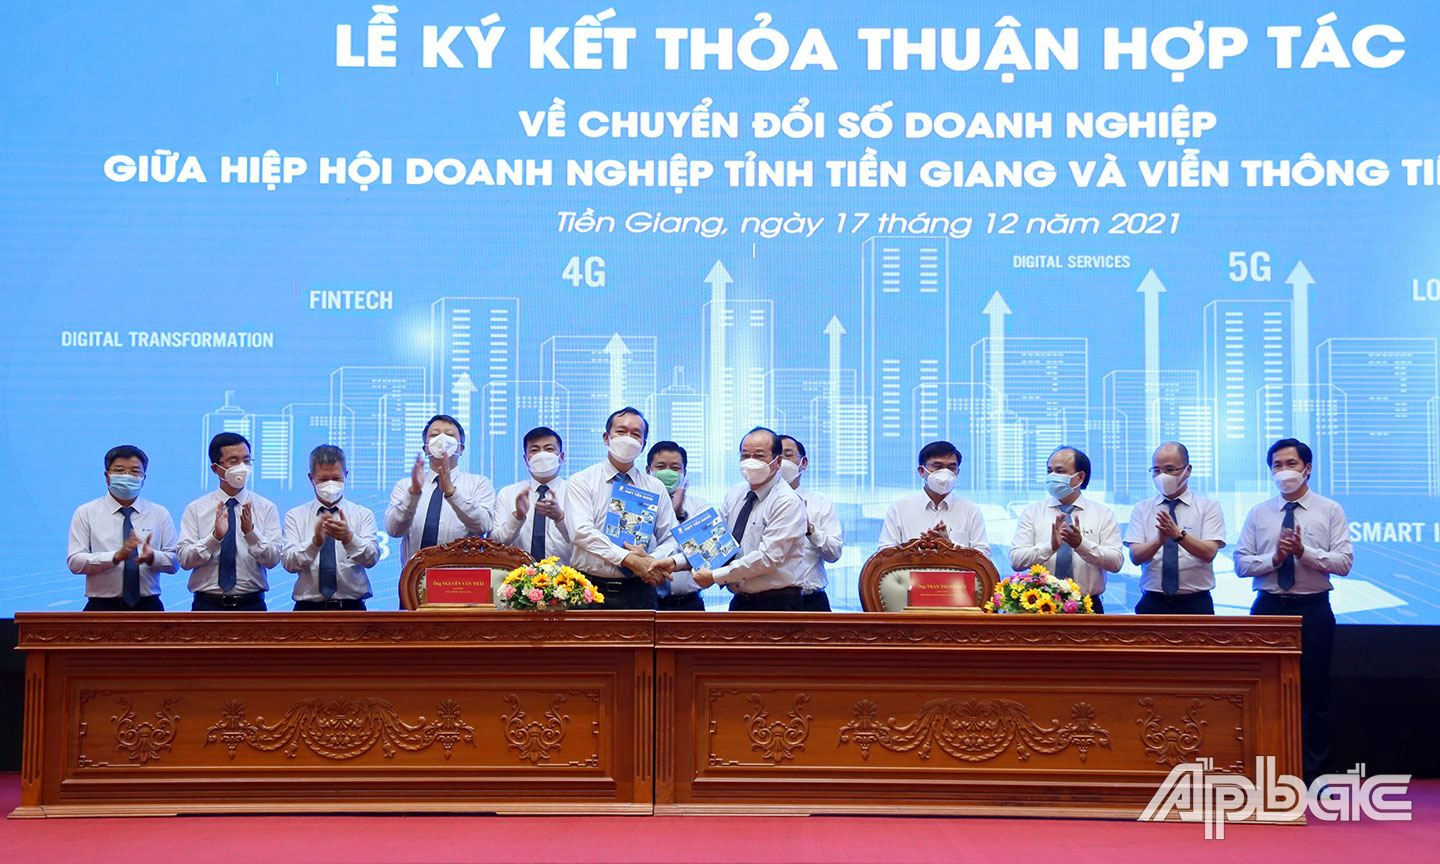 Hiệp hội Doanh nghiệp tỉnh Tiền Giang và VNPT Tiền Giang ký kết thỏa thuận hợp tác về chuyển đổi số doanh nghiệp. 	Ảnh: LÊ MINH